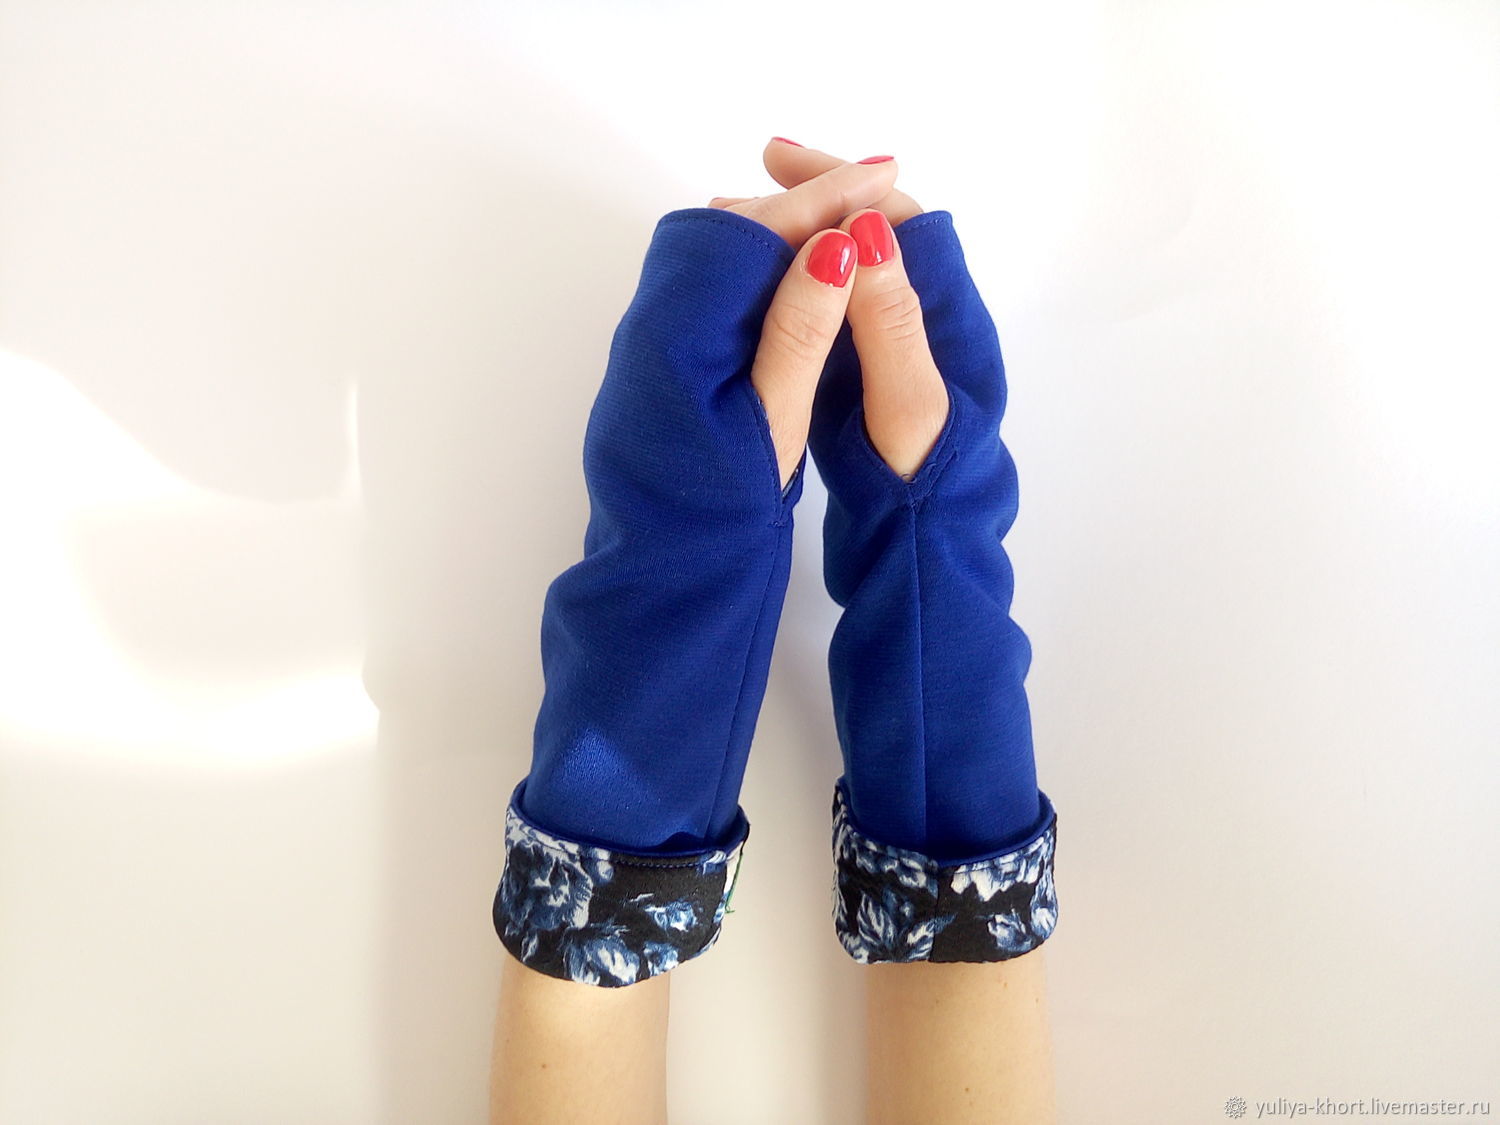 Митенки перчатки трикотажные синие средней  длинны